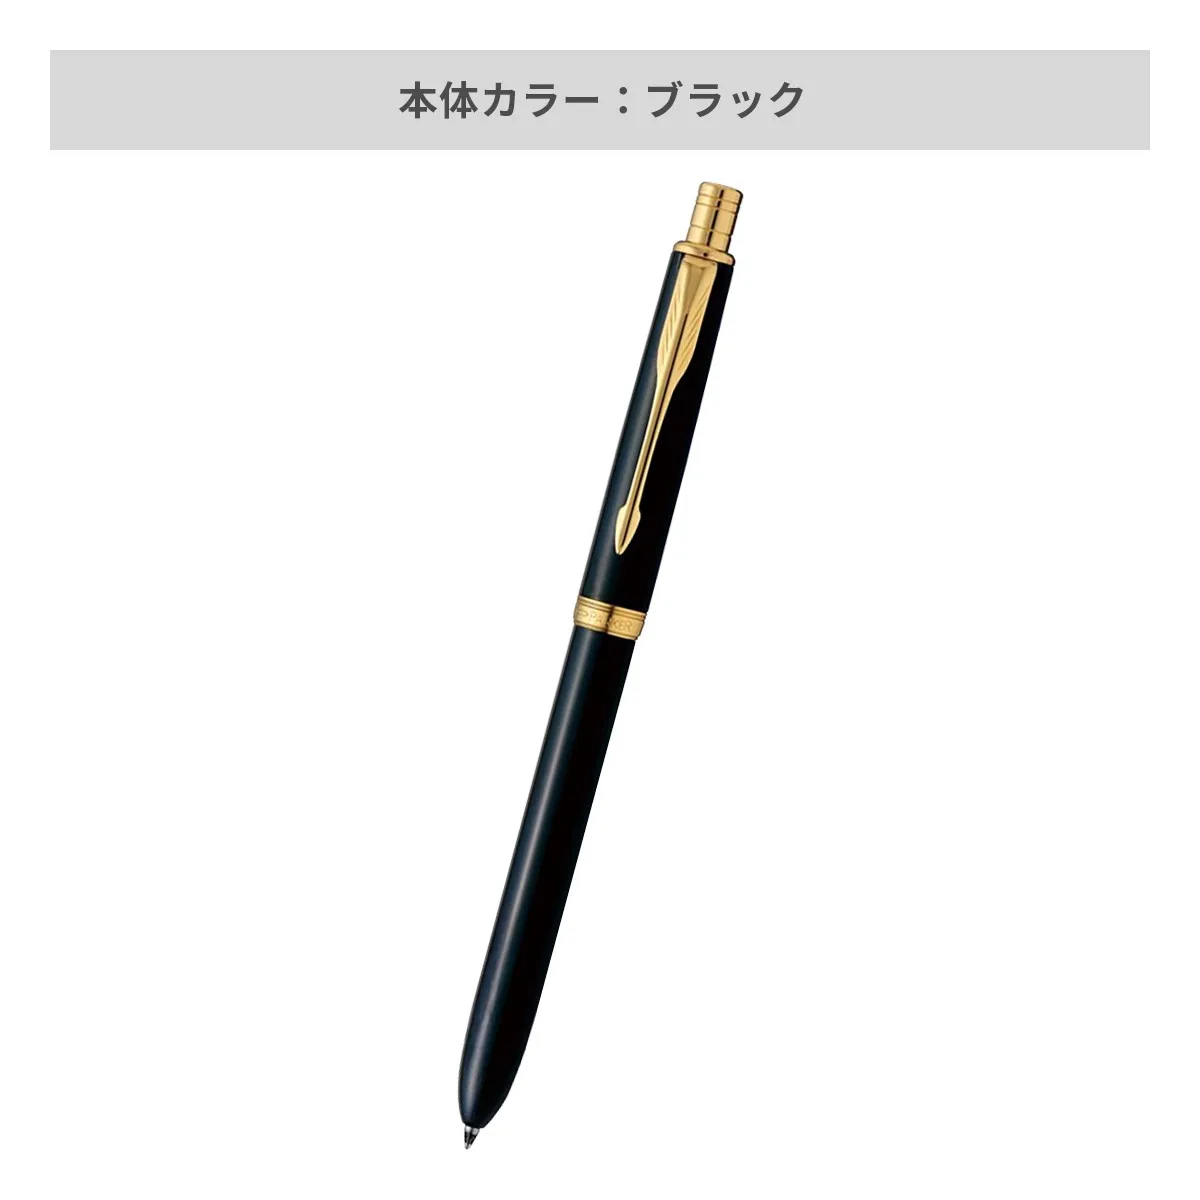 【短納期】パーカー ソネット オリジナル マルチファンクションペン 【多機能ペン / レーザー彫刻】 画像3